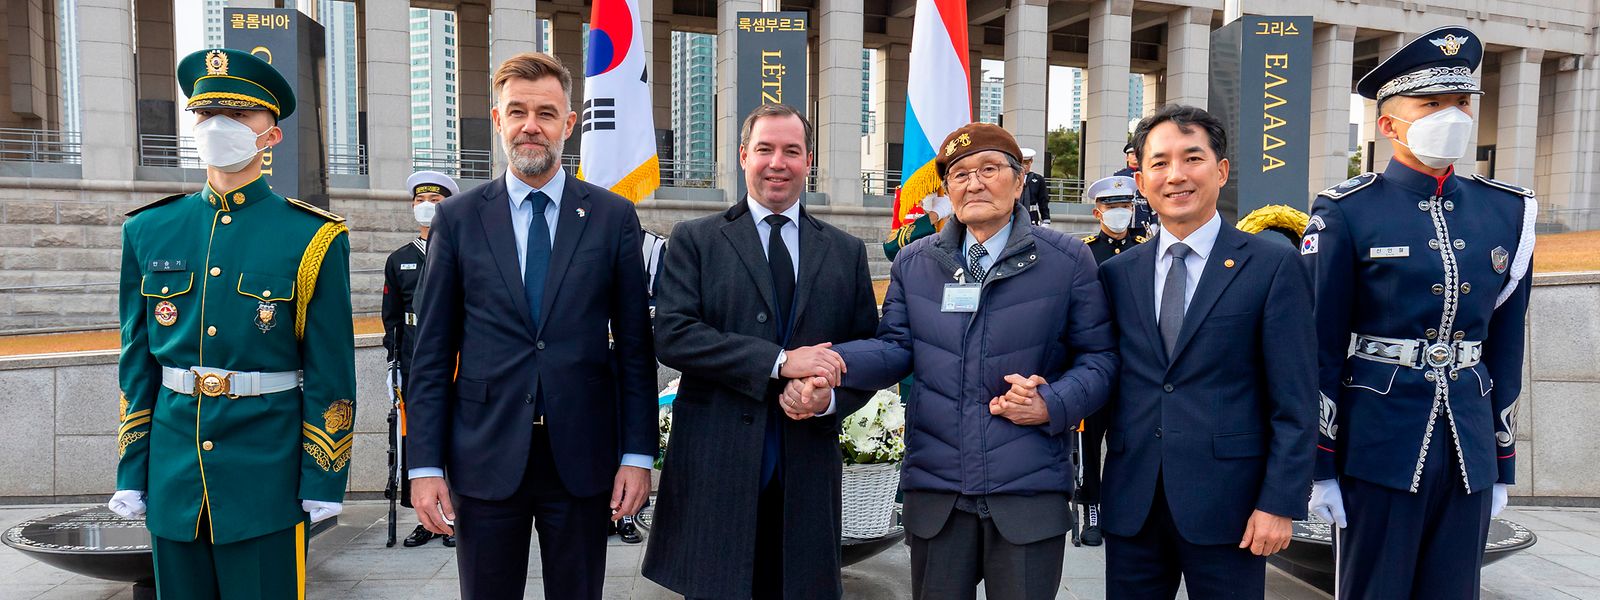 Wirtschaftsminister Franz Fayot  (2. v. li.), Ergroßherzog Guillaume (Mitte), Kriegsveteran Sungsoo Kim und der Minister für Patrioten- und Veteranen-Angelegenheiten, Park Min-sik (2. v. re.), verbindet die luxemburgische Unterstützung im Koreakrieg.